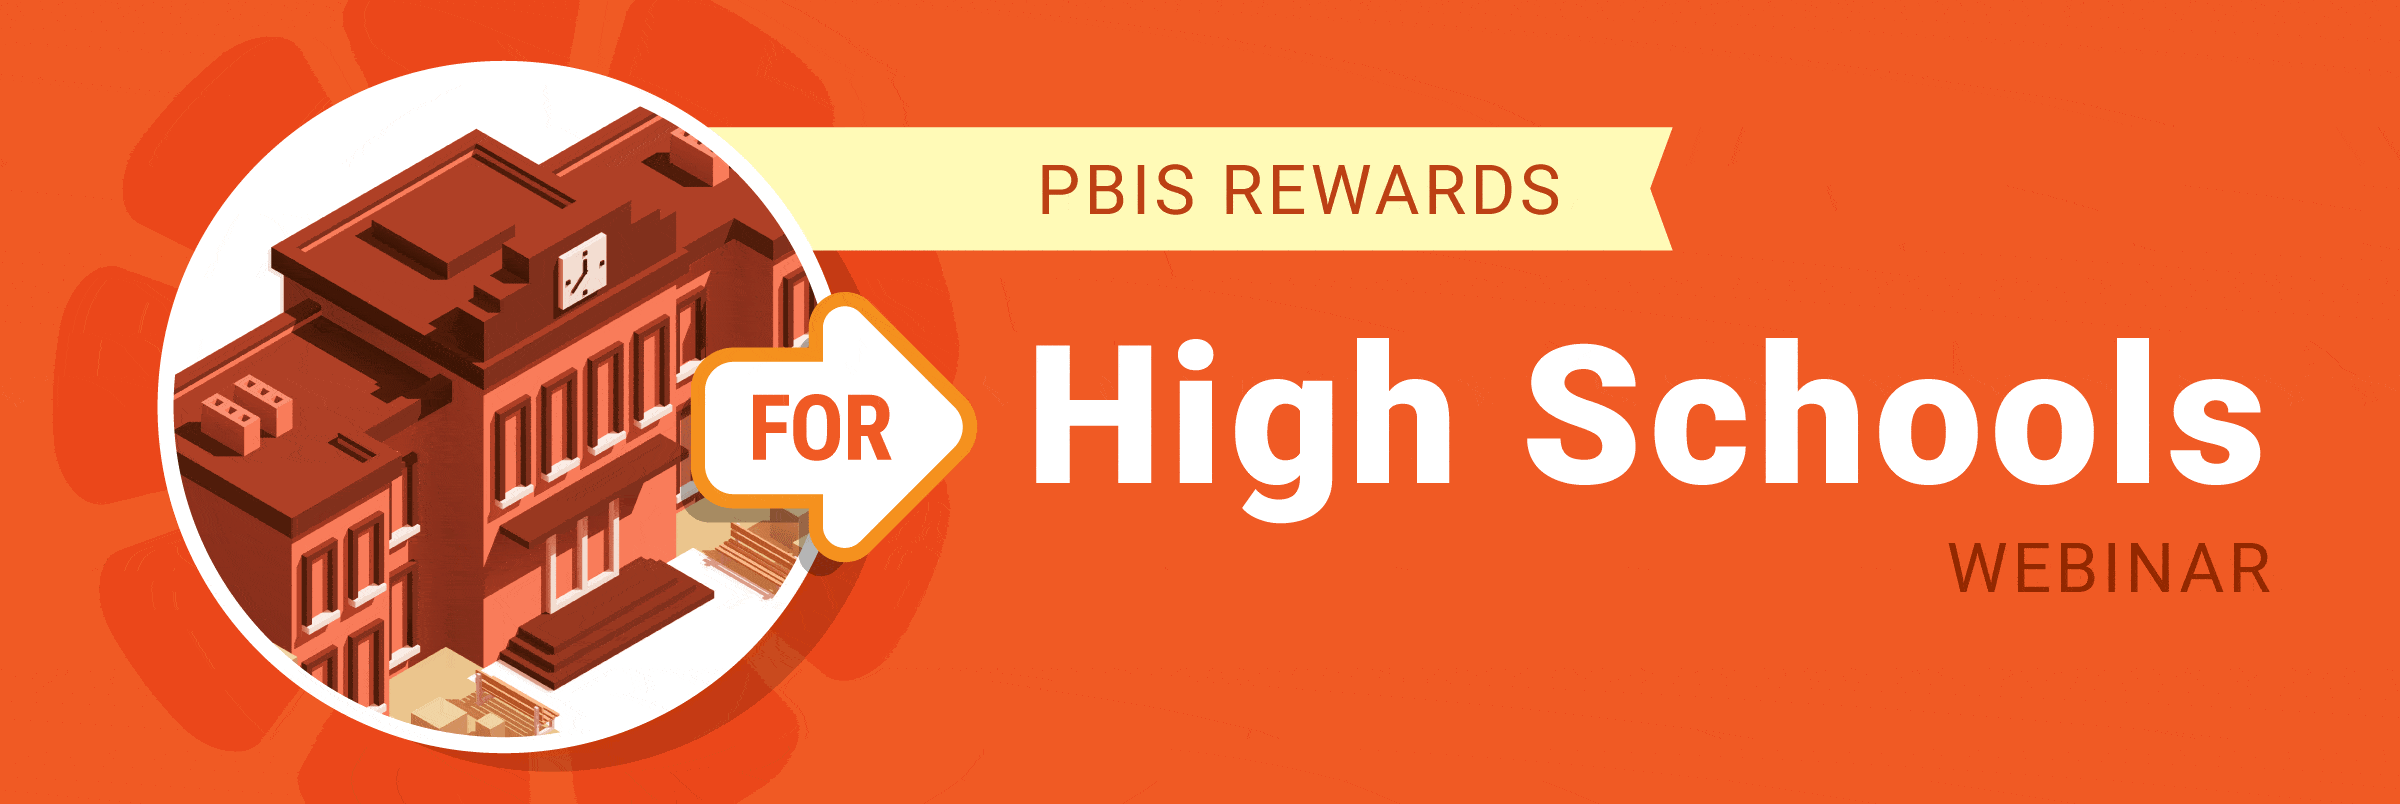 PBIS Rewards Flash Webinar - PBIS Rewards for High Schools